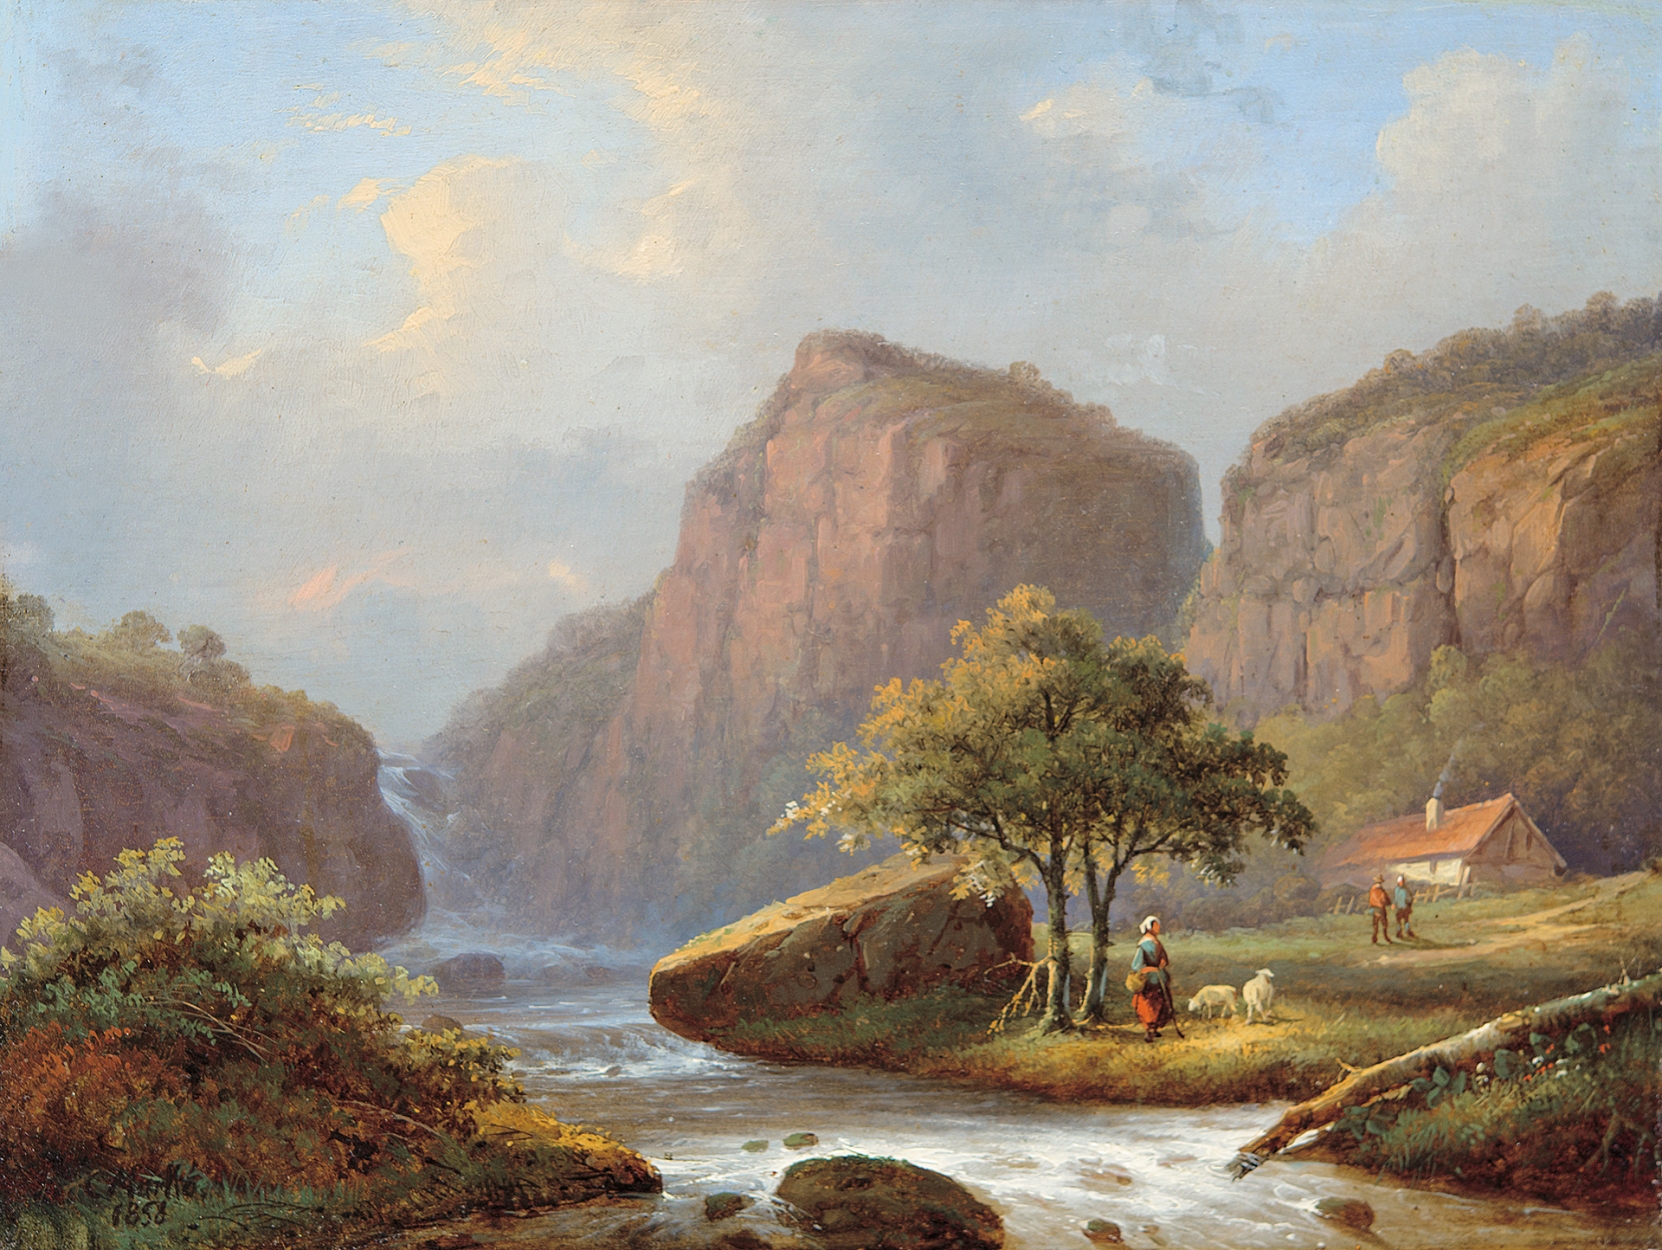 Markó Károly, Ifj. (1822 - 1891) Vízesés a hegyekben, 1858